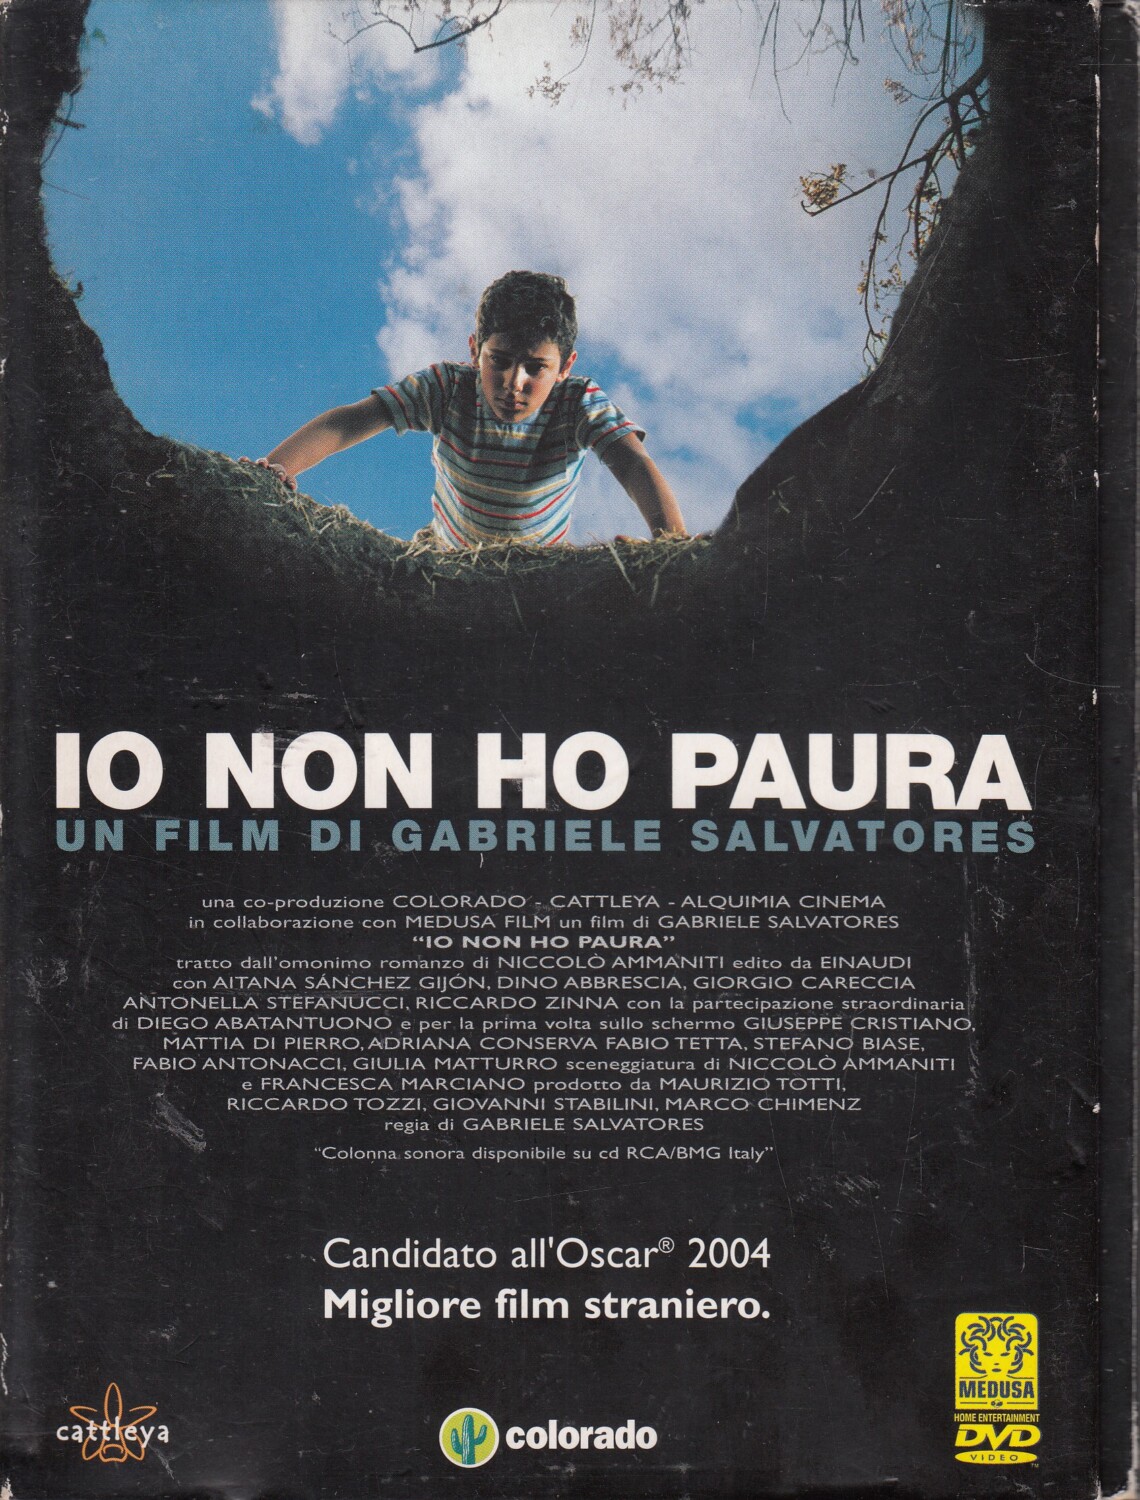 Io non ho paura (Gabriele Salvatores) – DVD in Italiano – Emporio di milo